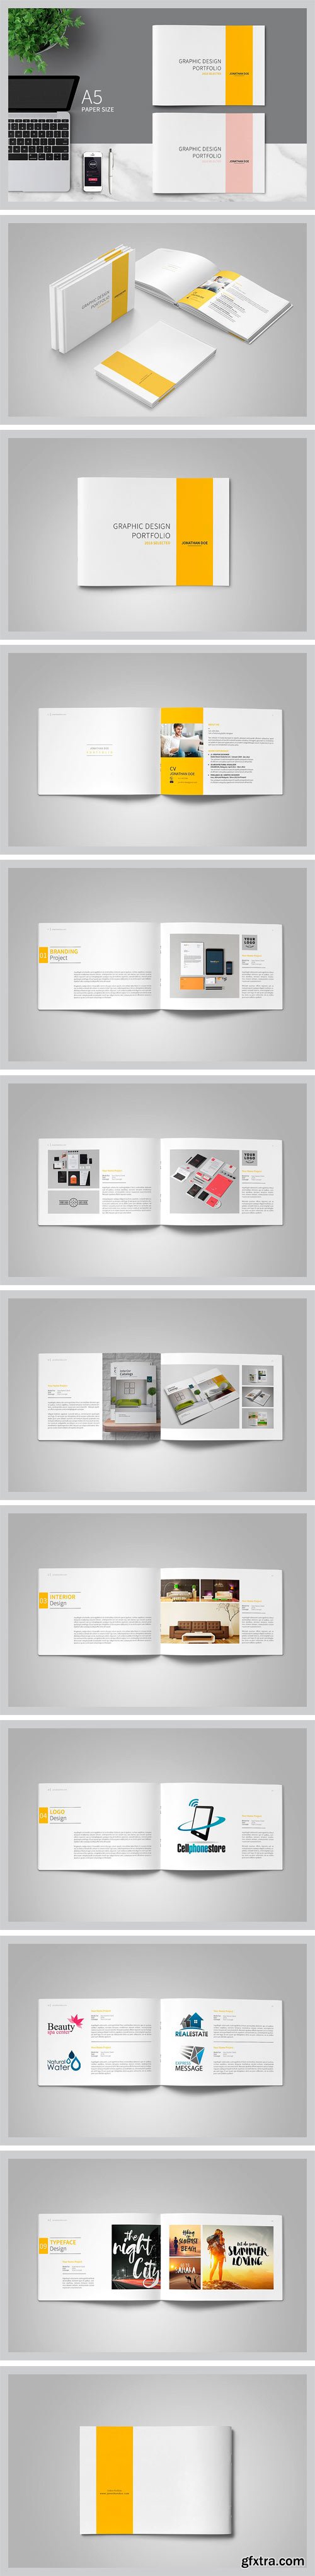 CM - Graphic Design Portfolio Template 2295260